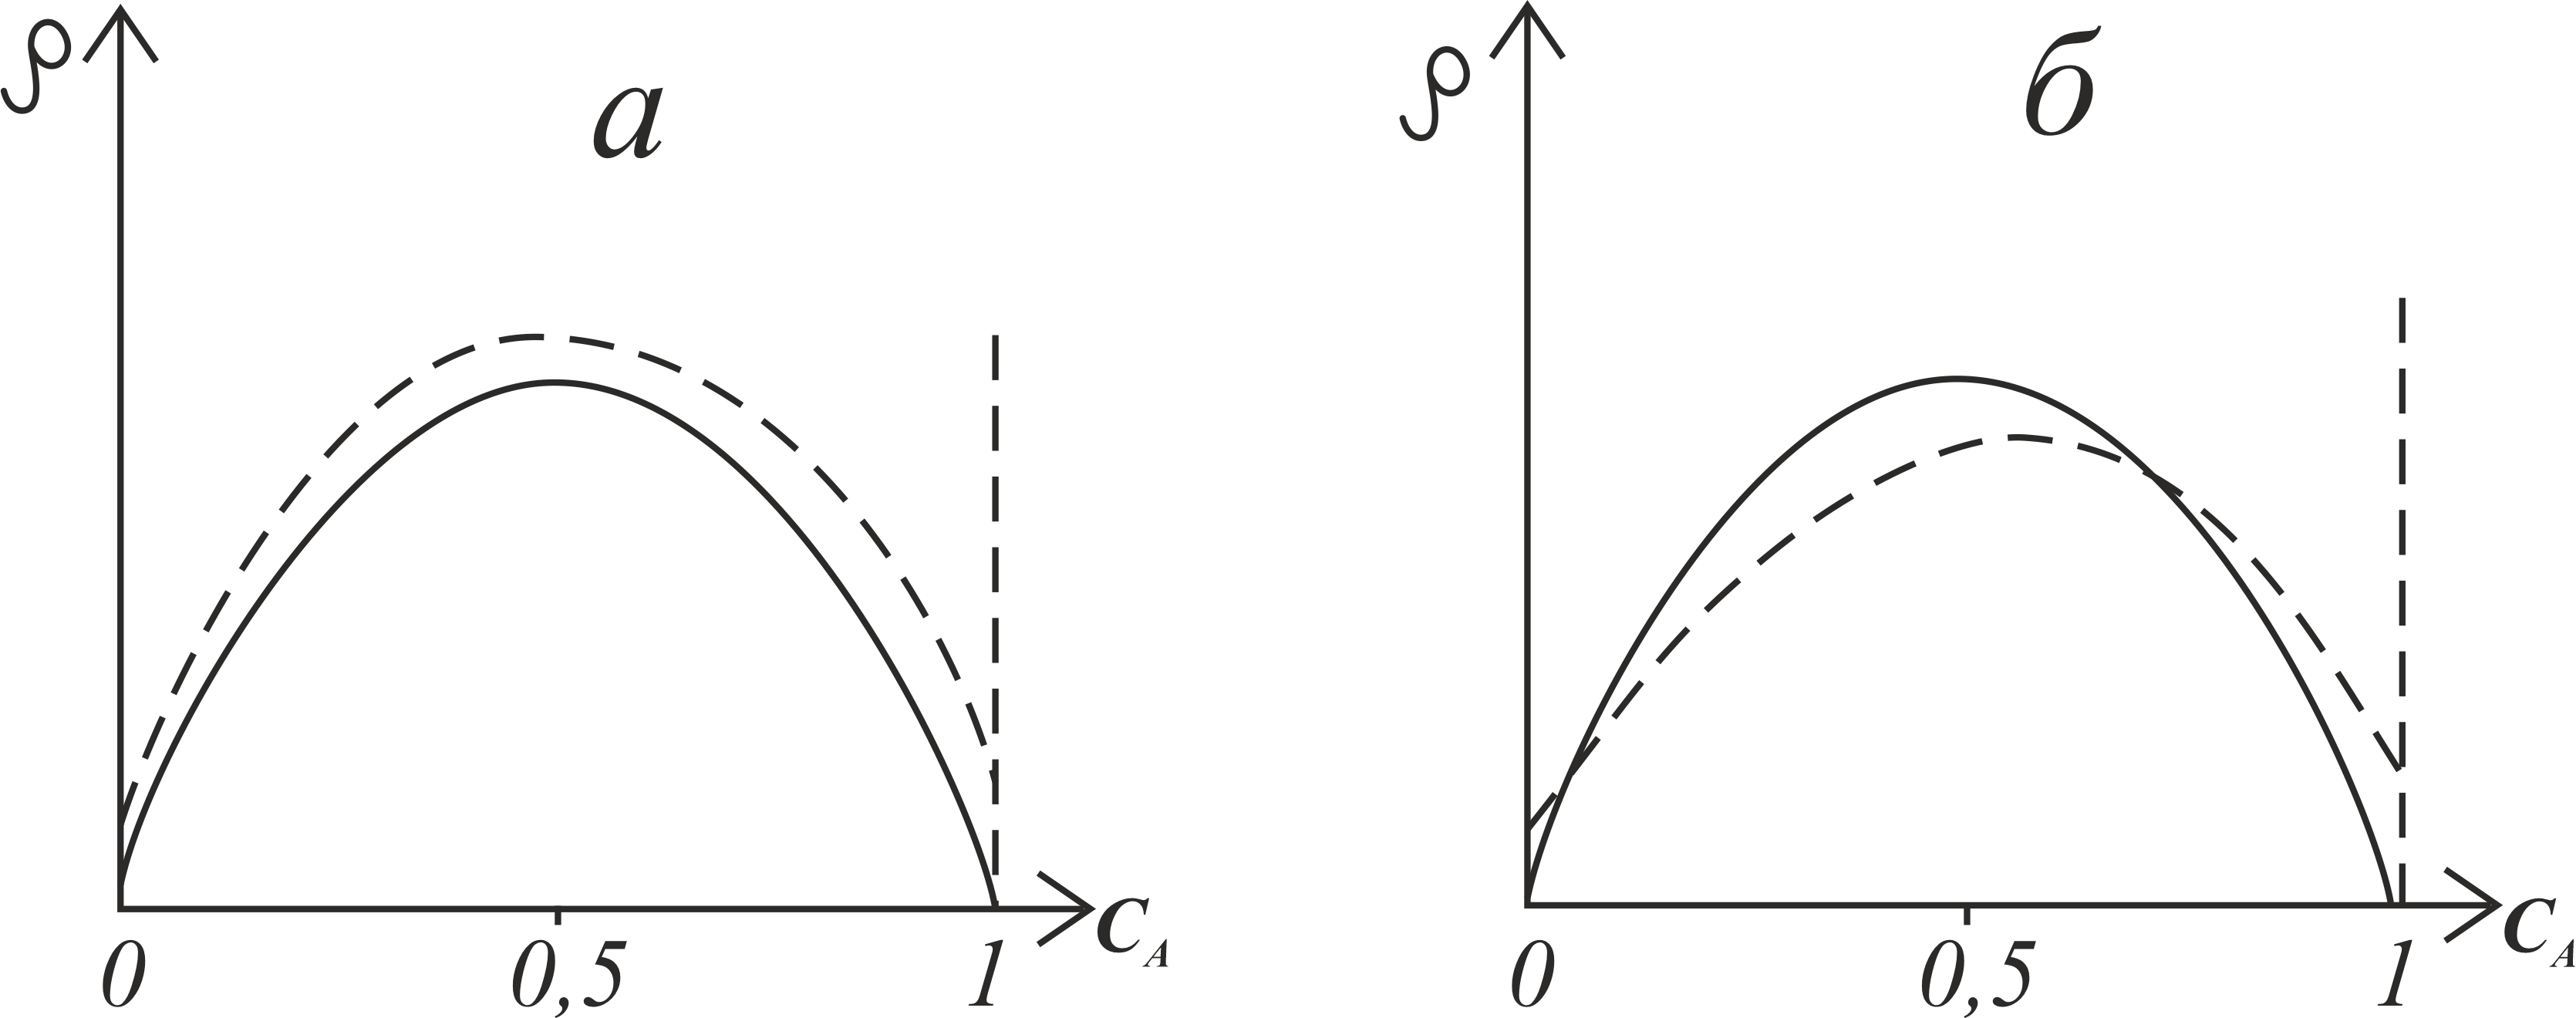  Концентрационные зависимости остаточного электросопротивления p неупорядоченного сплава с вакансиями (пунктирная линия) и без вакансий (сплошная линия)